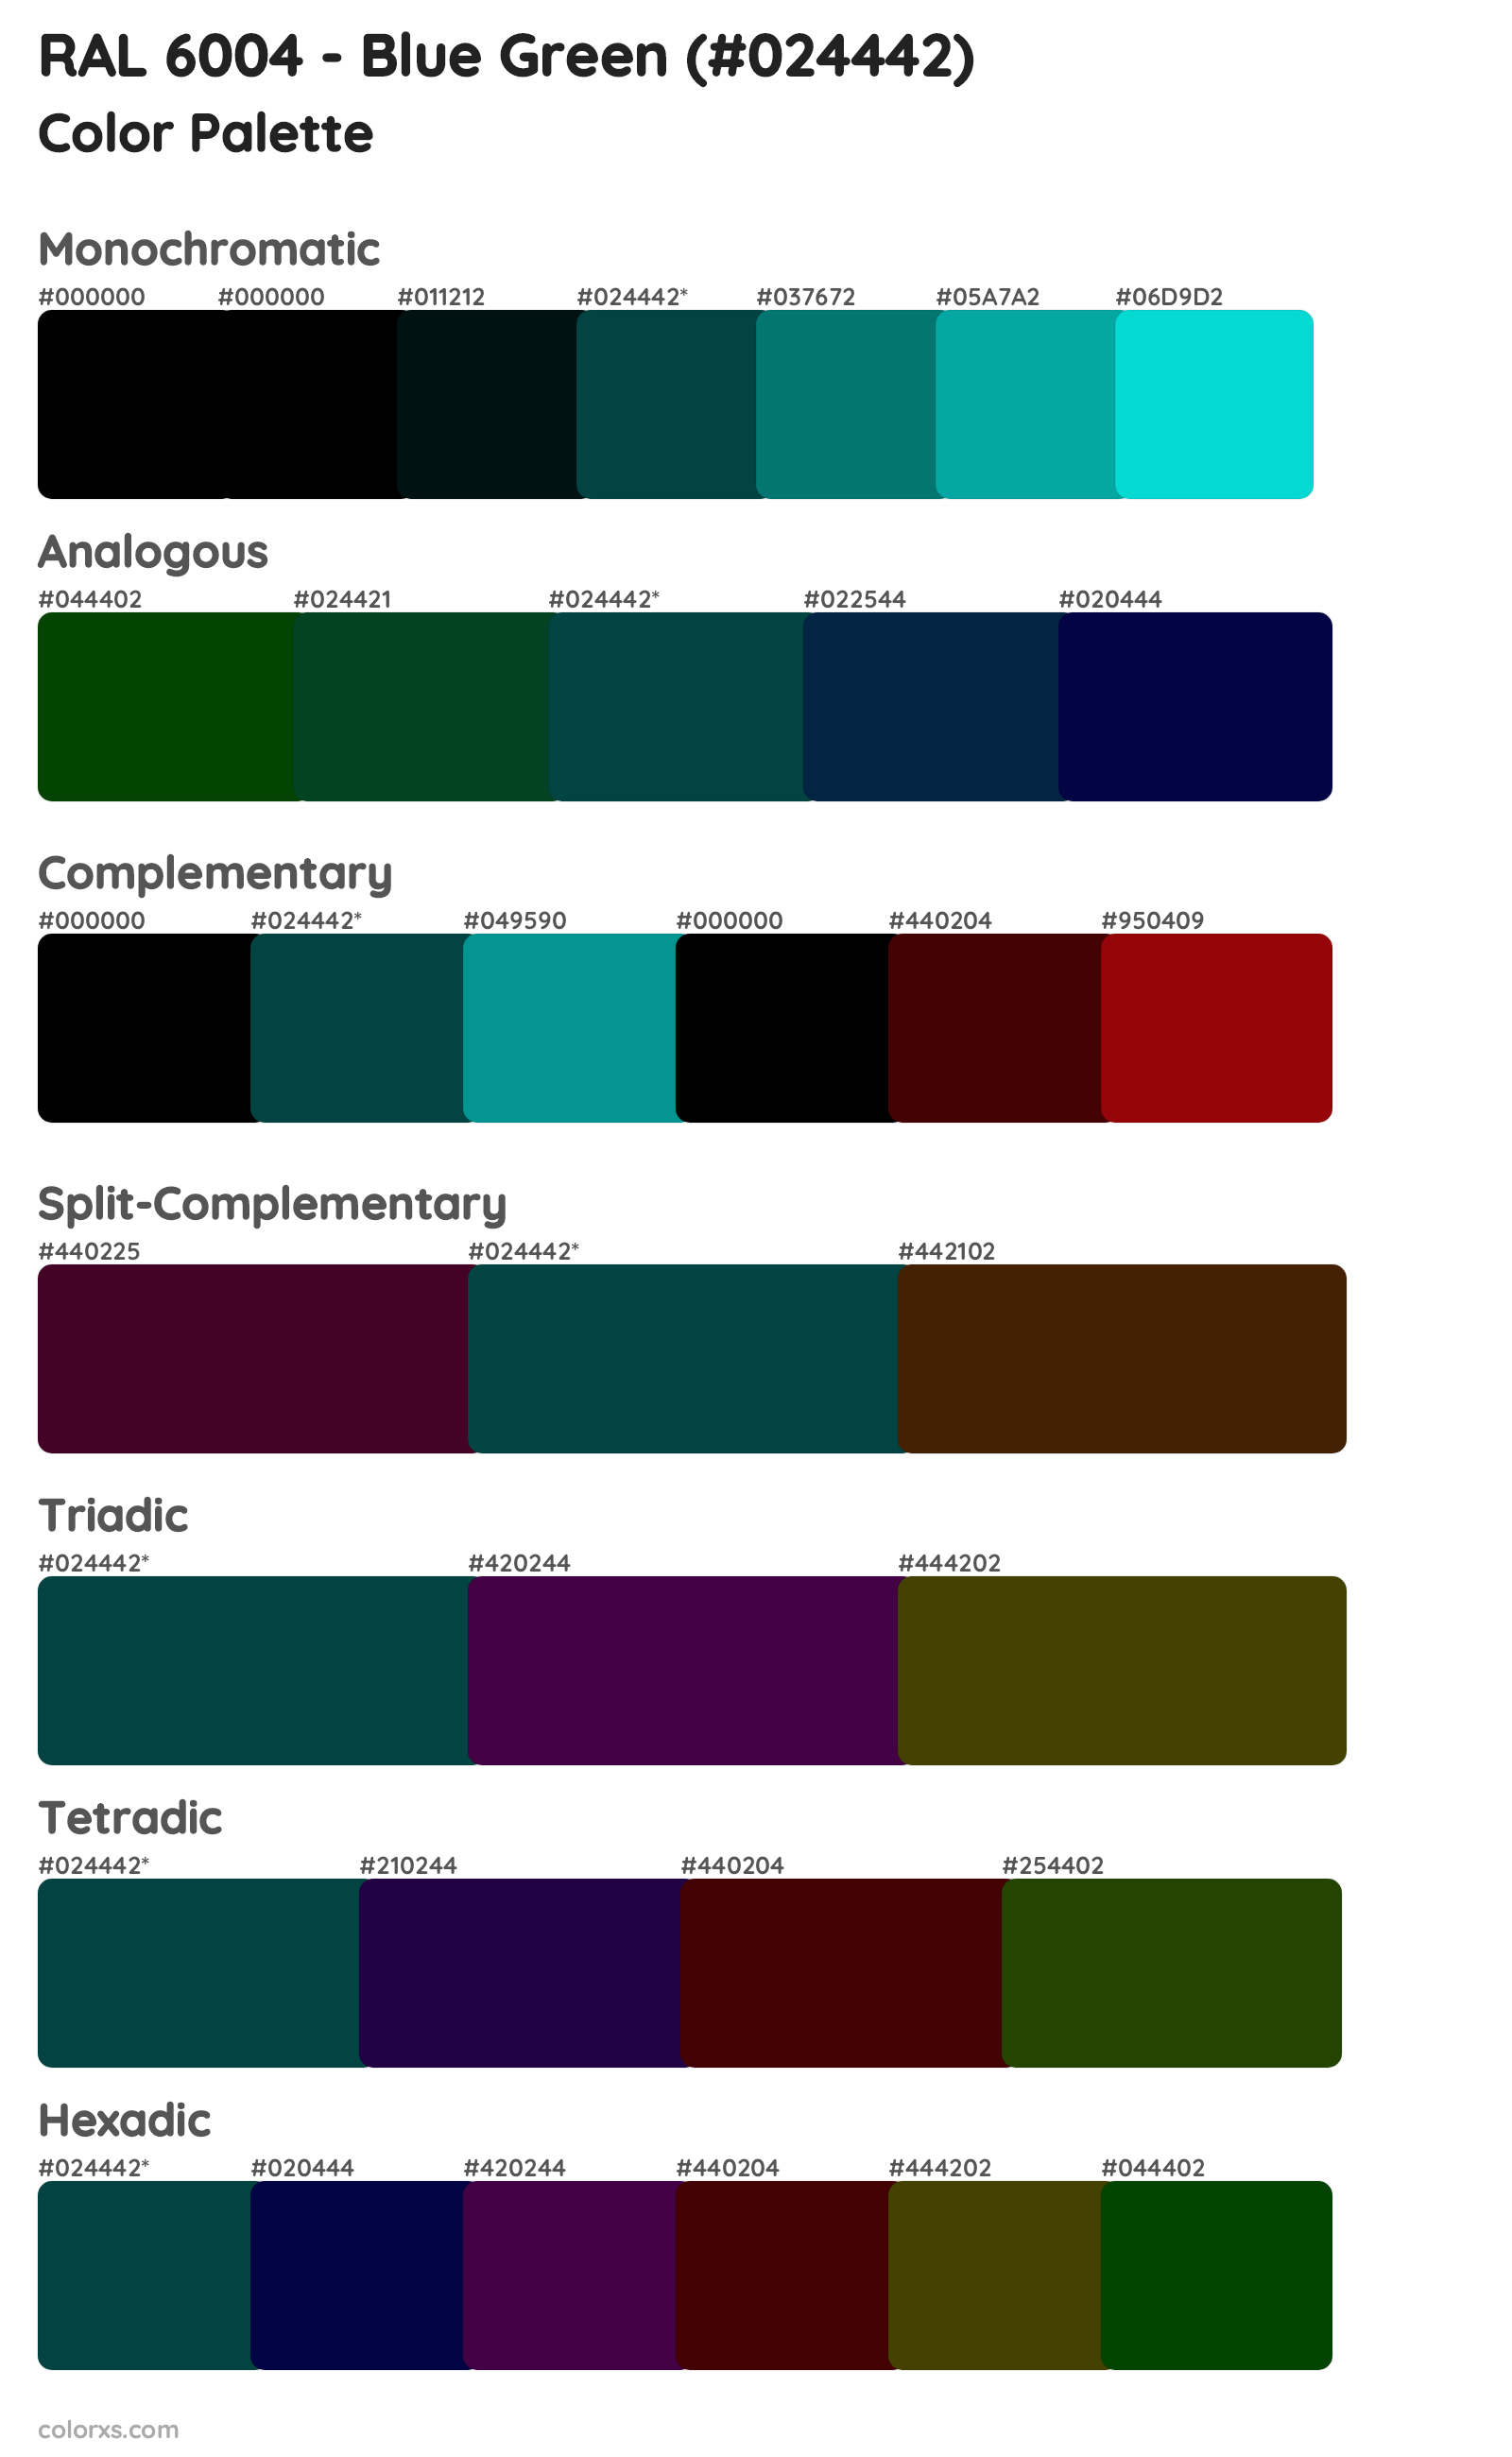 RAL 6004 - Blue Green Color Scheme Palettes